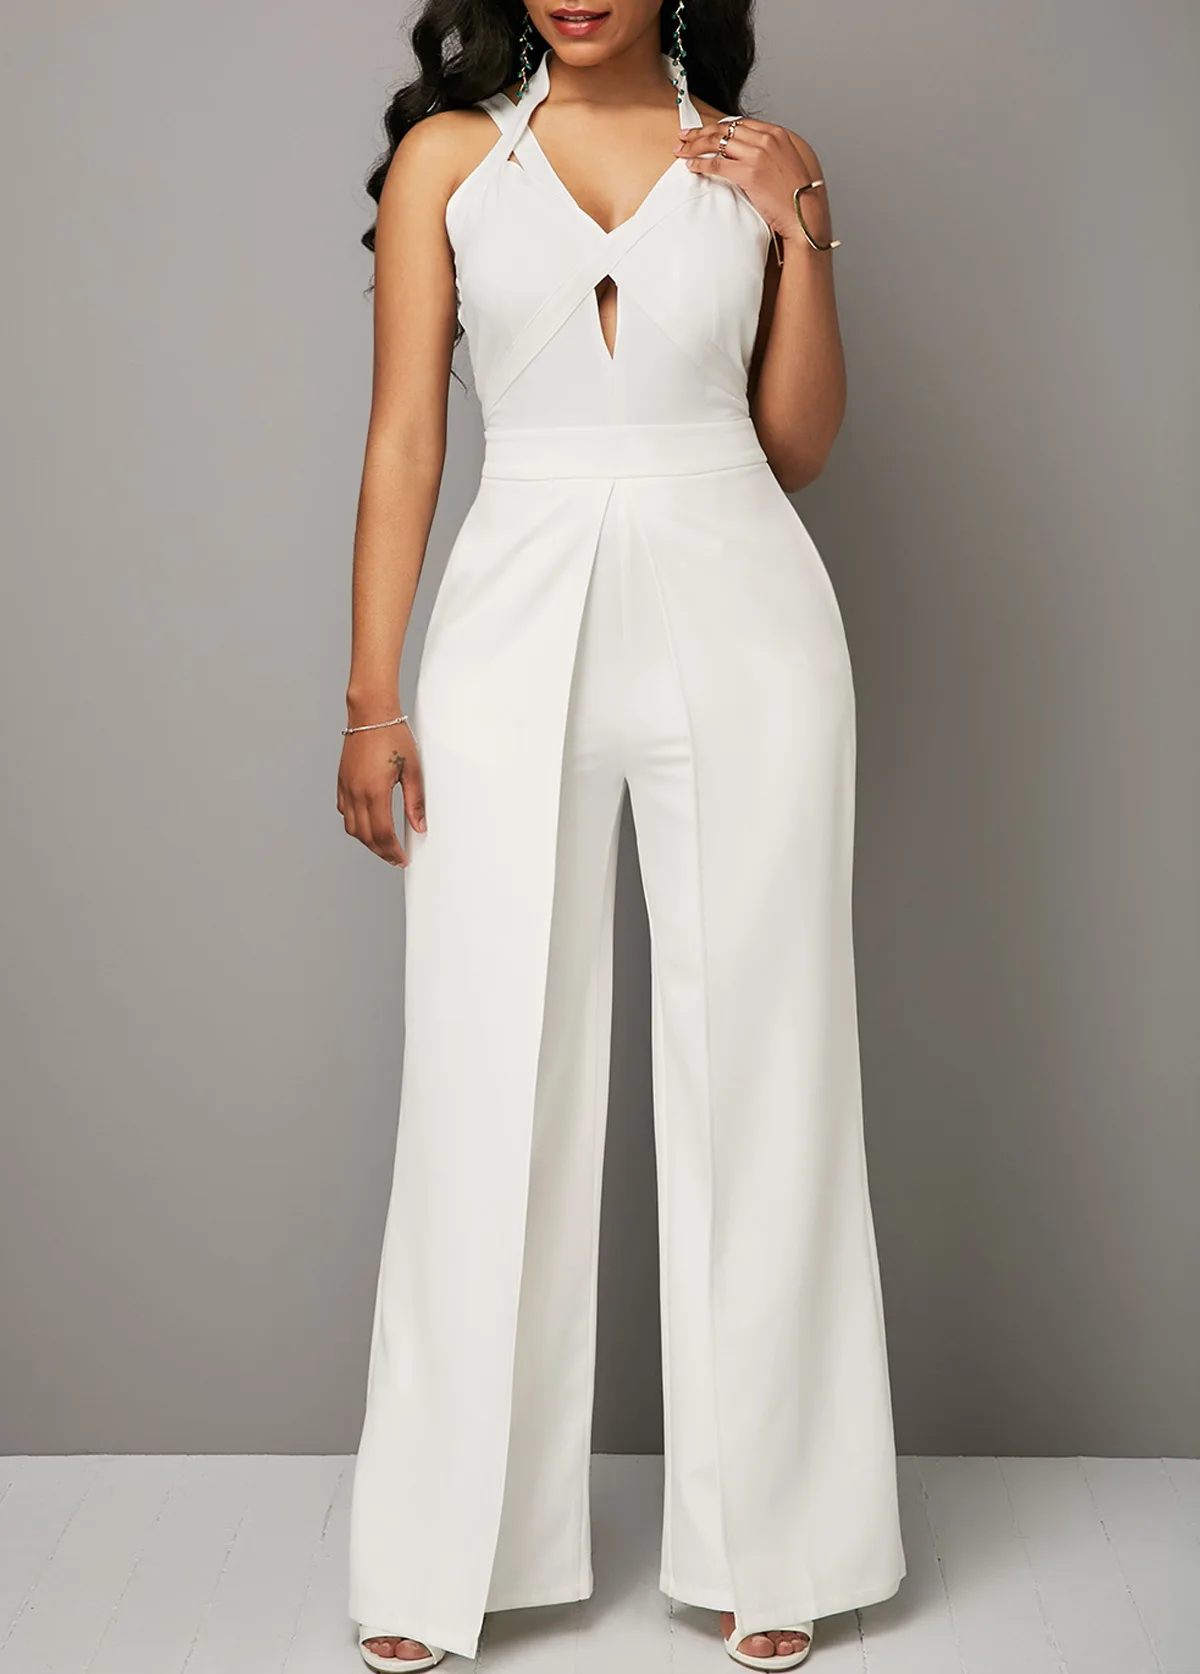 MUXU белый комбинезон combinaison pantalon femme elegante v образным вырезом широкие брюки комбинезон с открытой спиной Боди тела женский сексуальный комбинезон - Цвет: white